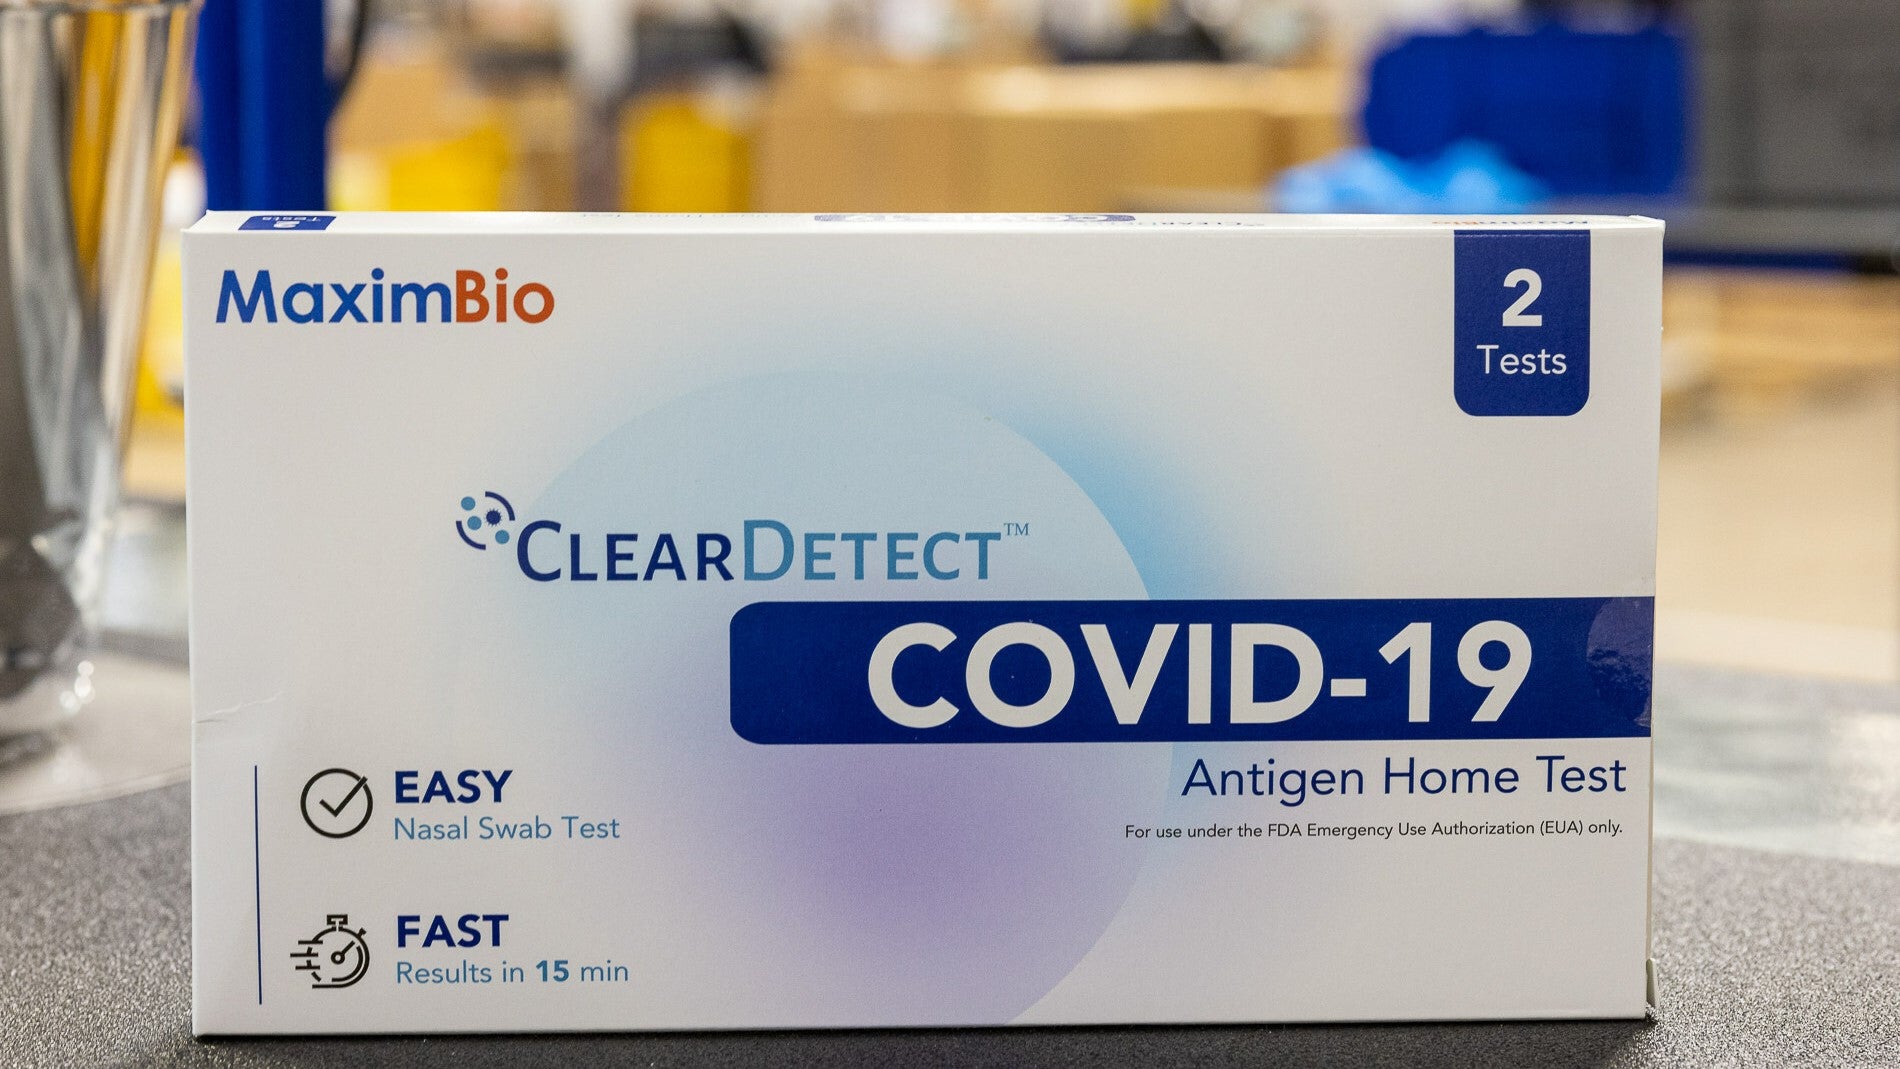 MaximBio ganha prêmio de saúde dos EUA de US$ 49.5 milhões para fabricar testes de Covid-19